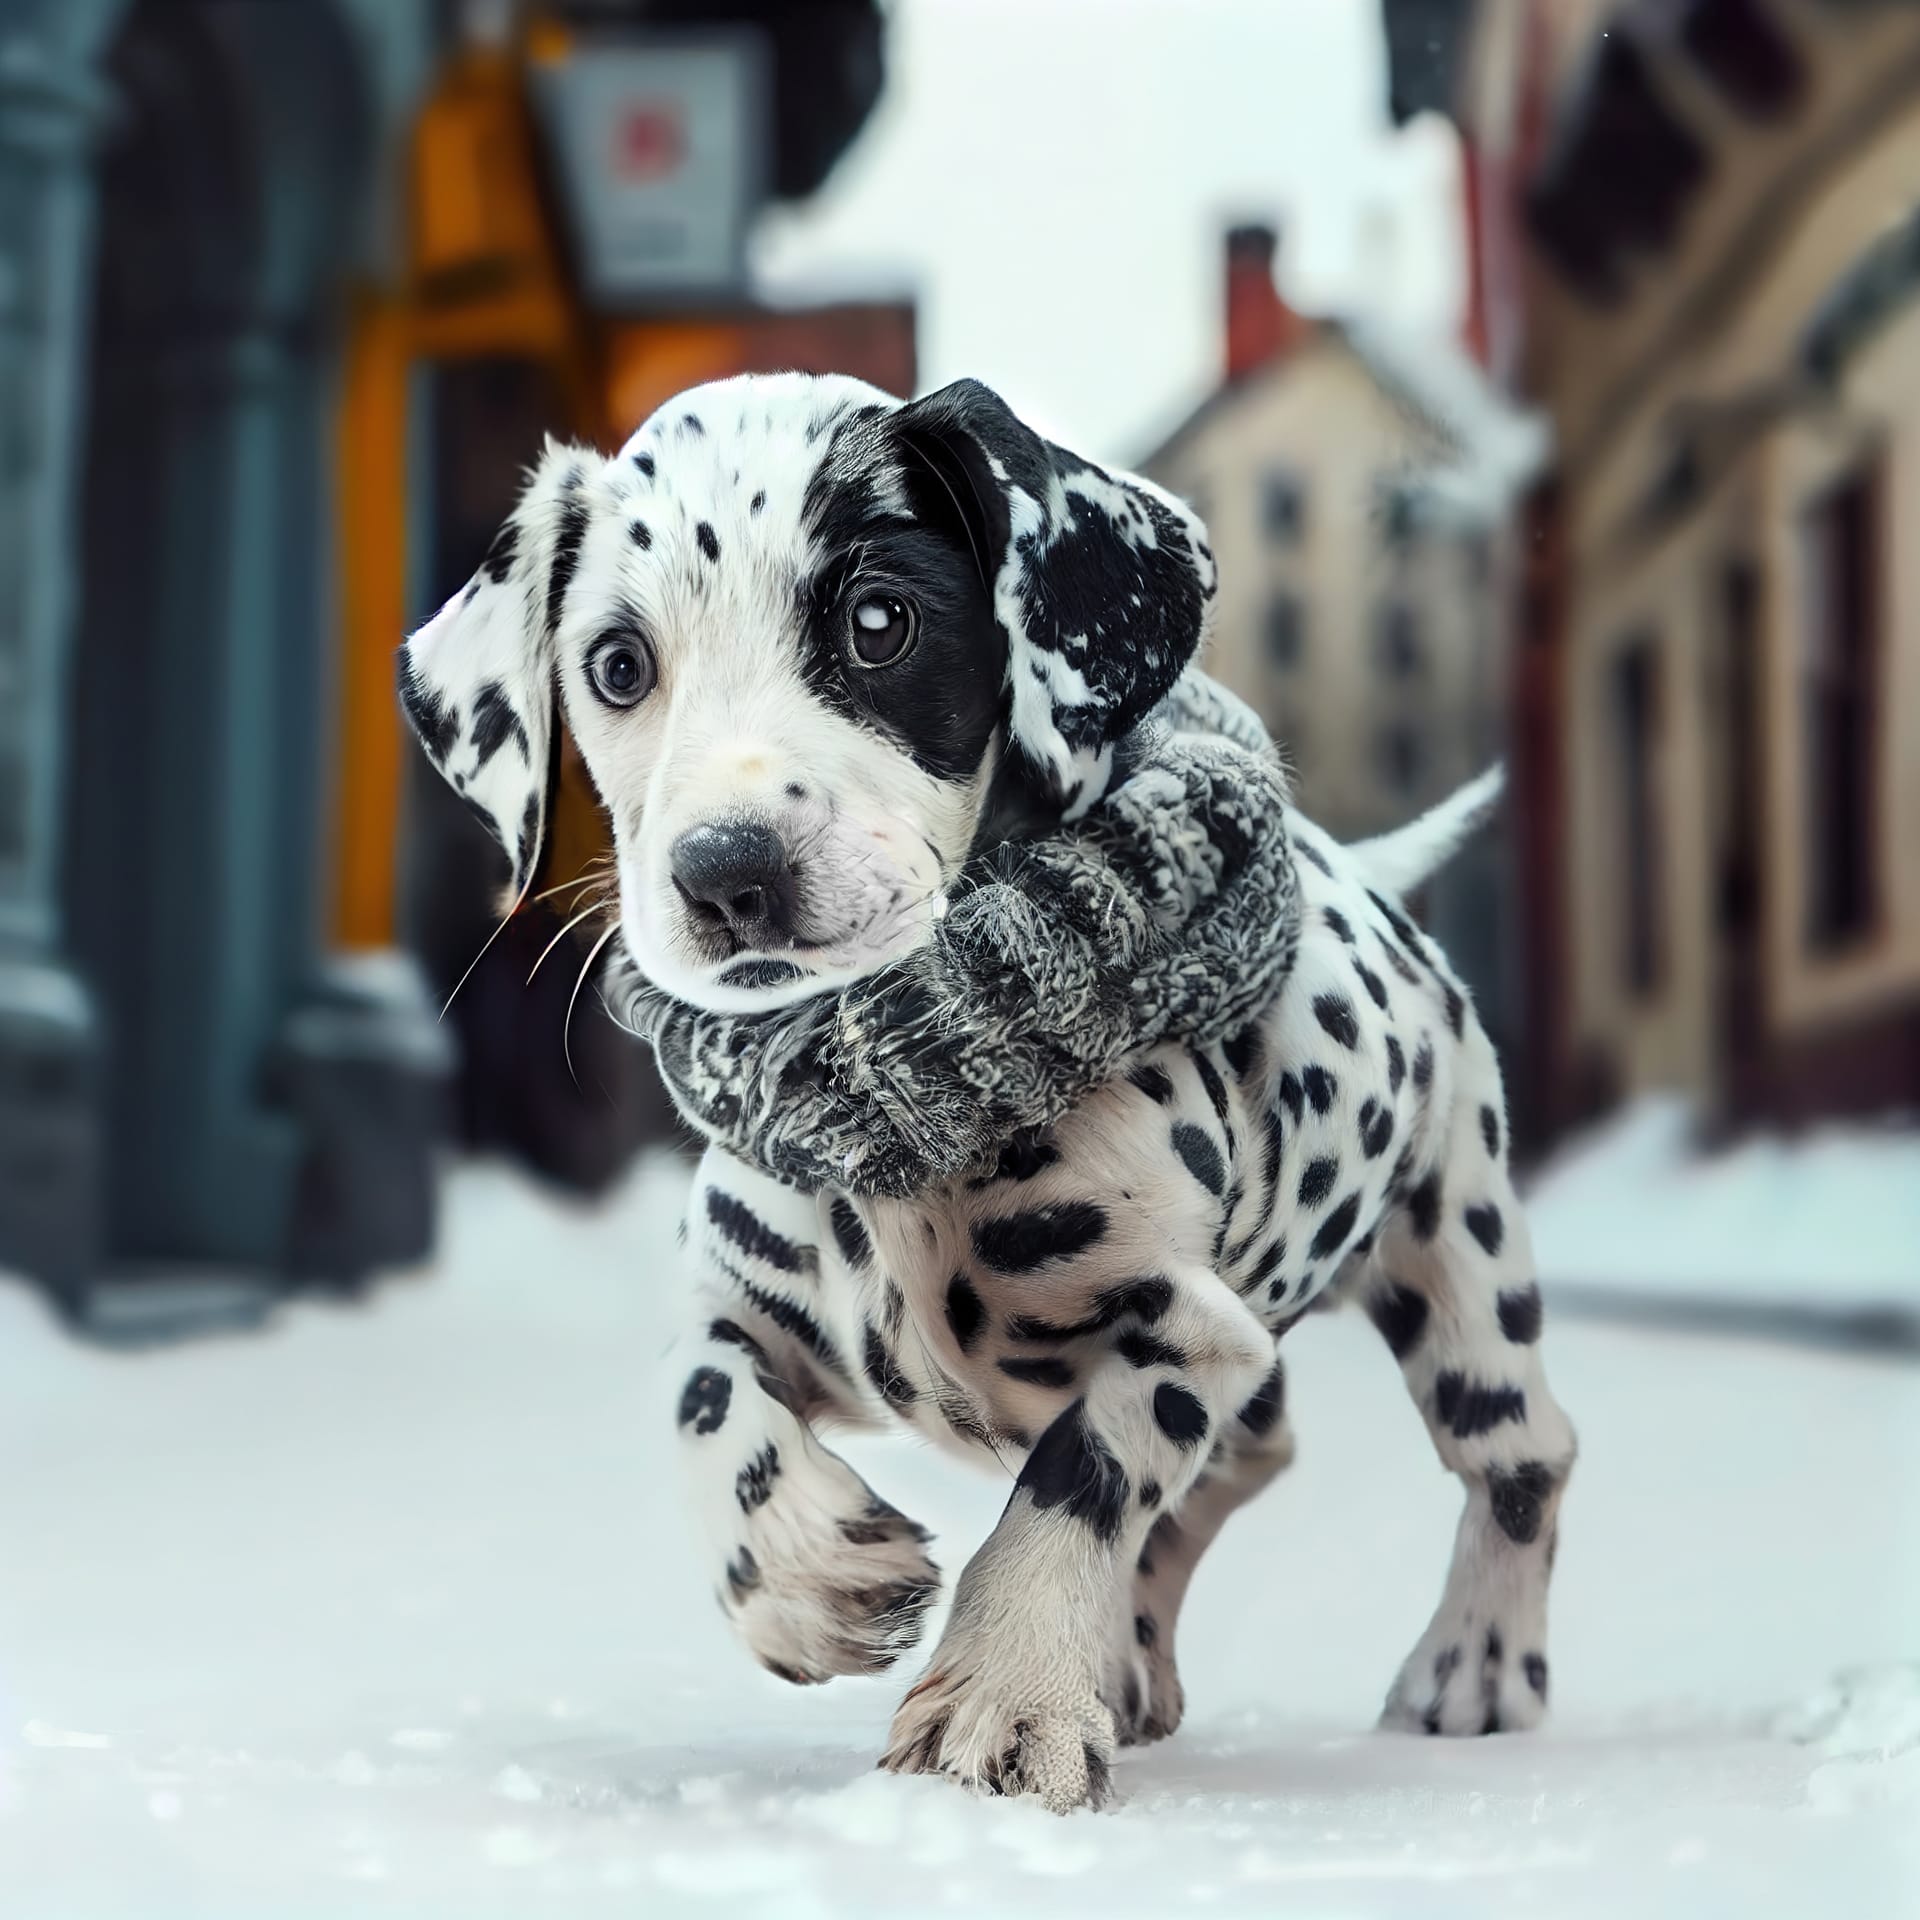 Dalmatian dog running winter street little town